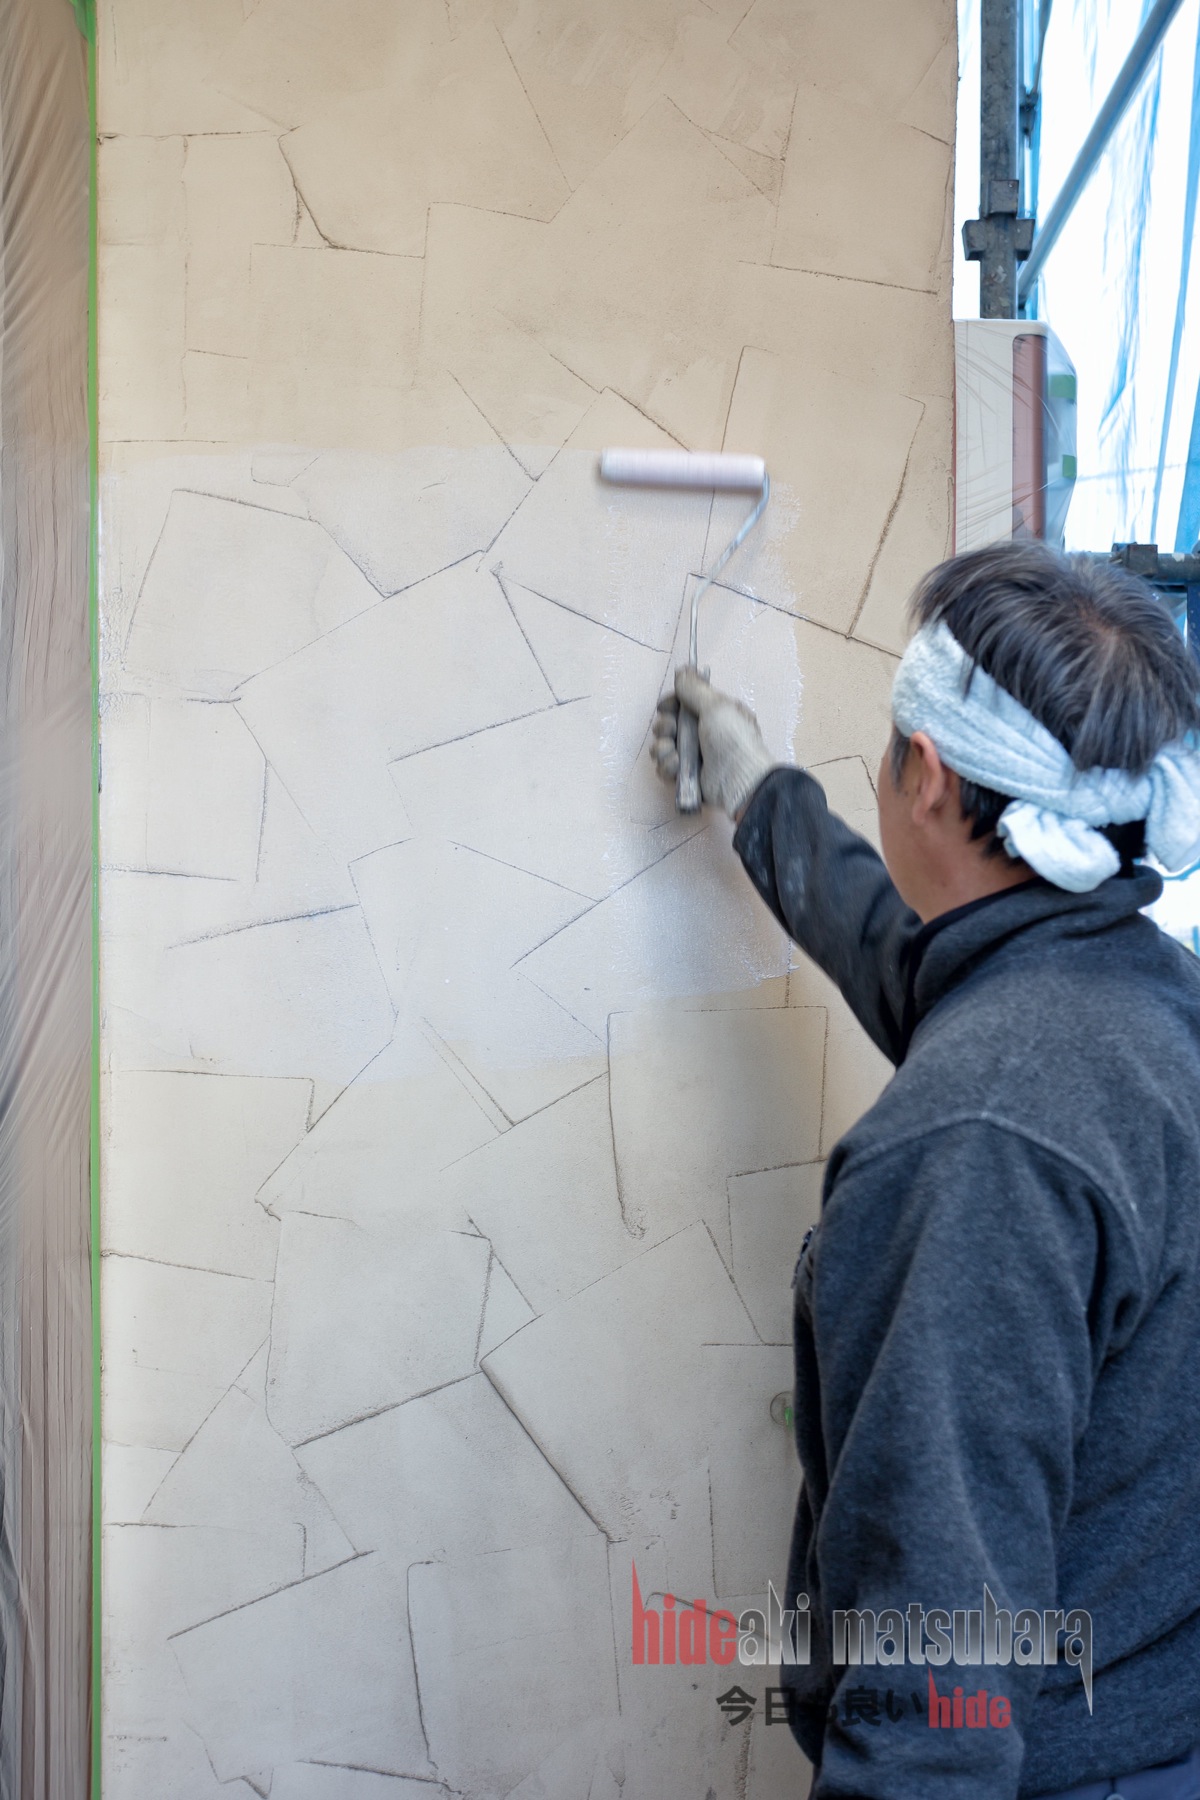 ジョリパットフレッシュを使ってみた 外壁の塗り替え工事 Hideaki Matsubara 今日も良いhide